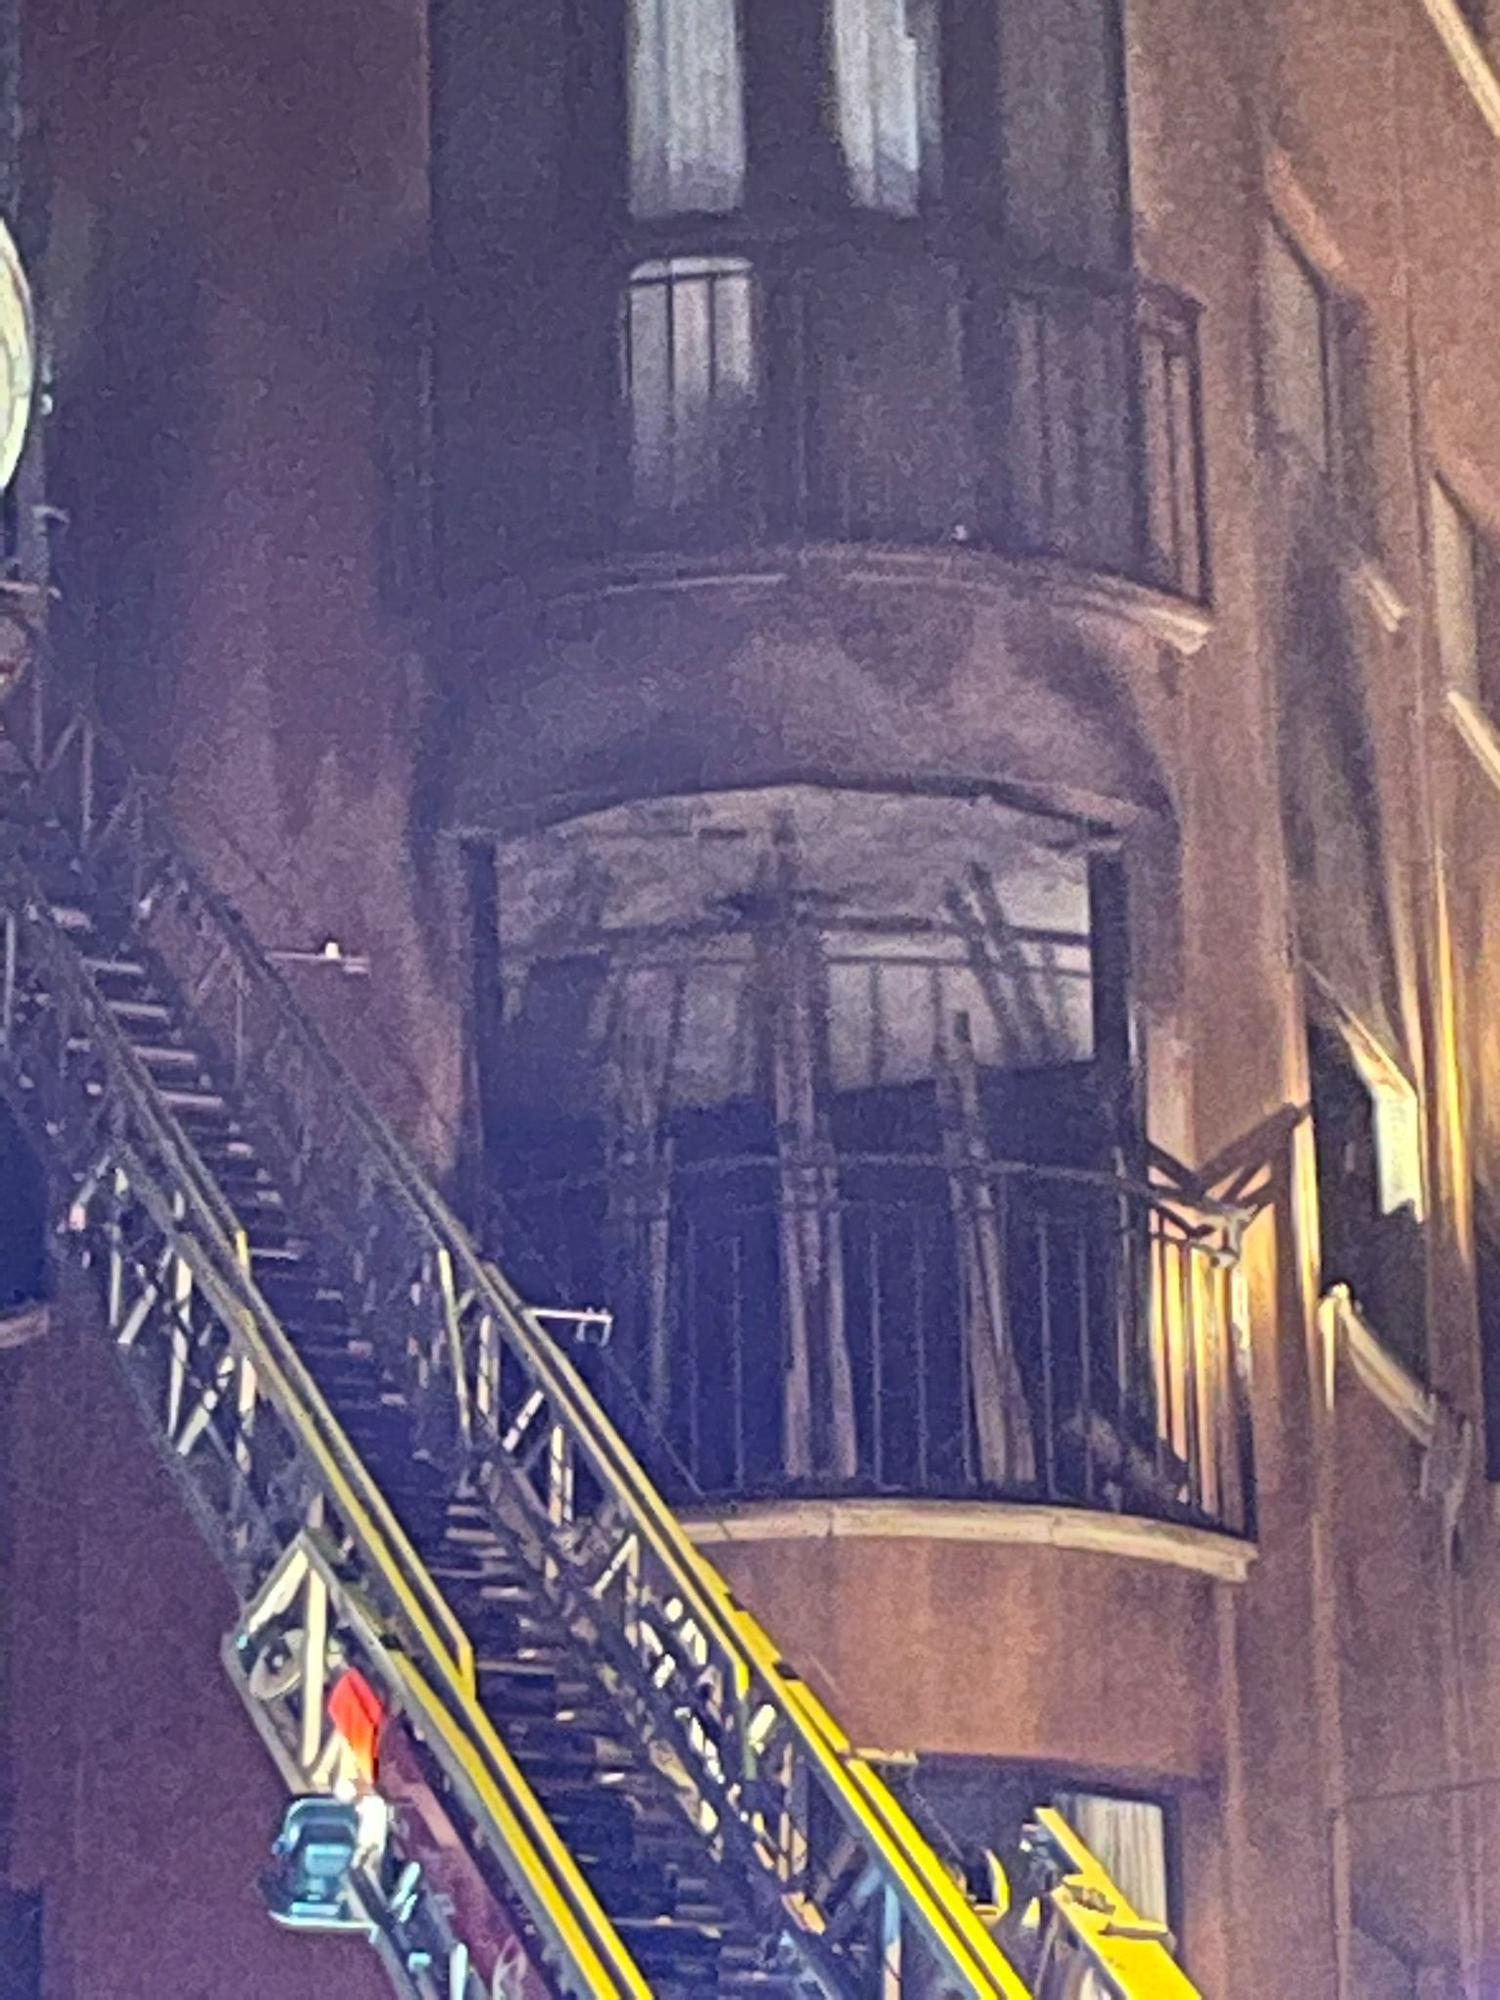 Las llamas en un edificio ponen en alerta a decenas de vecinos del centro de Murcia